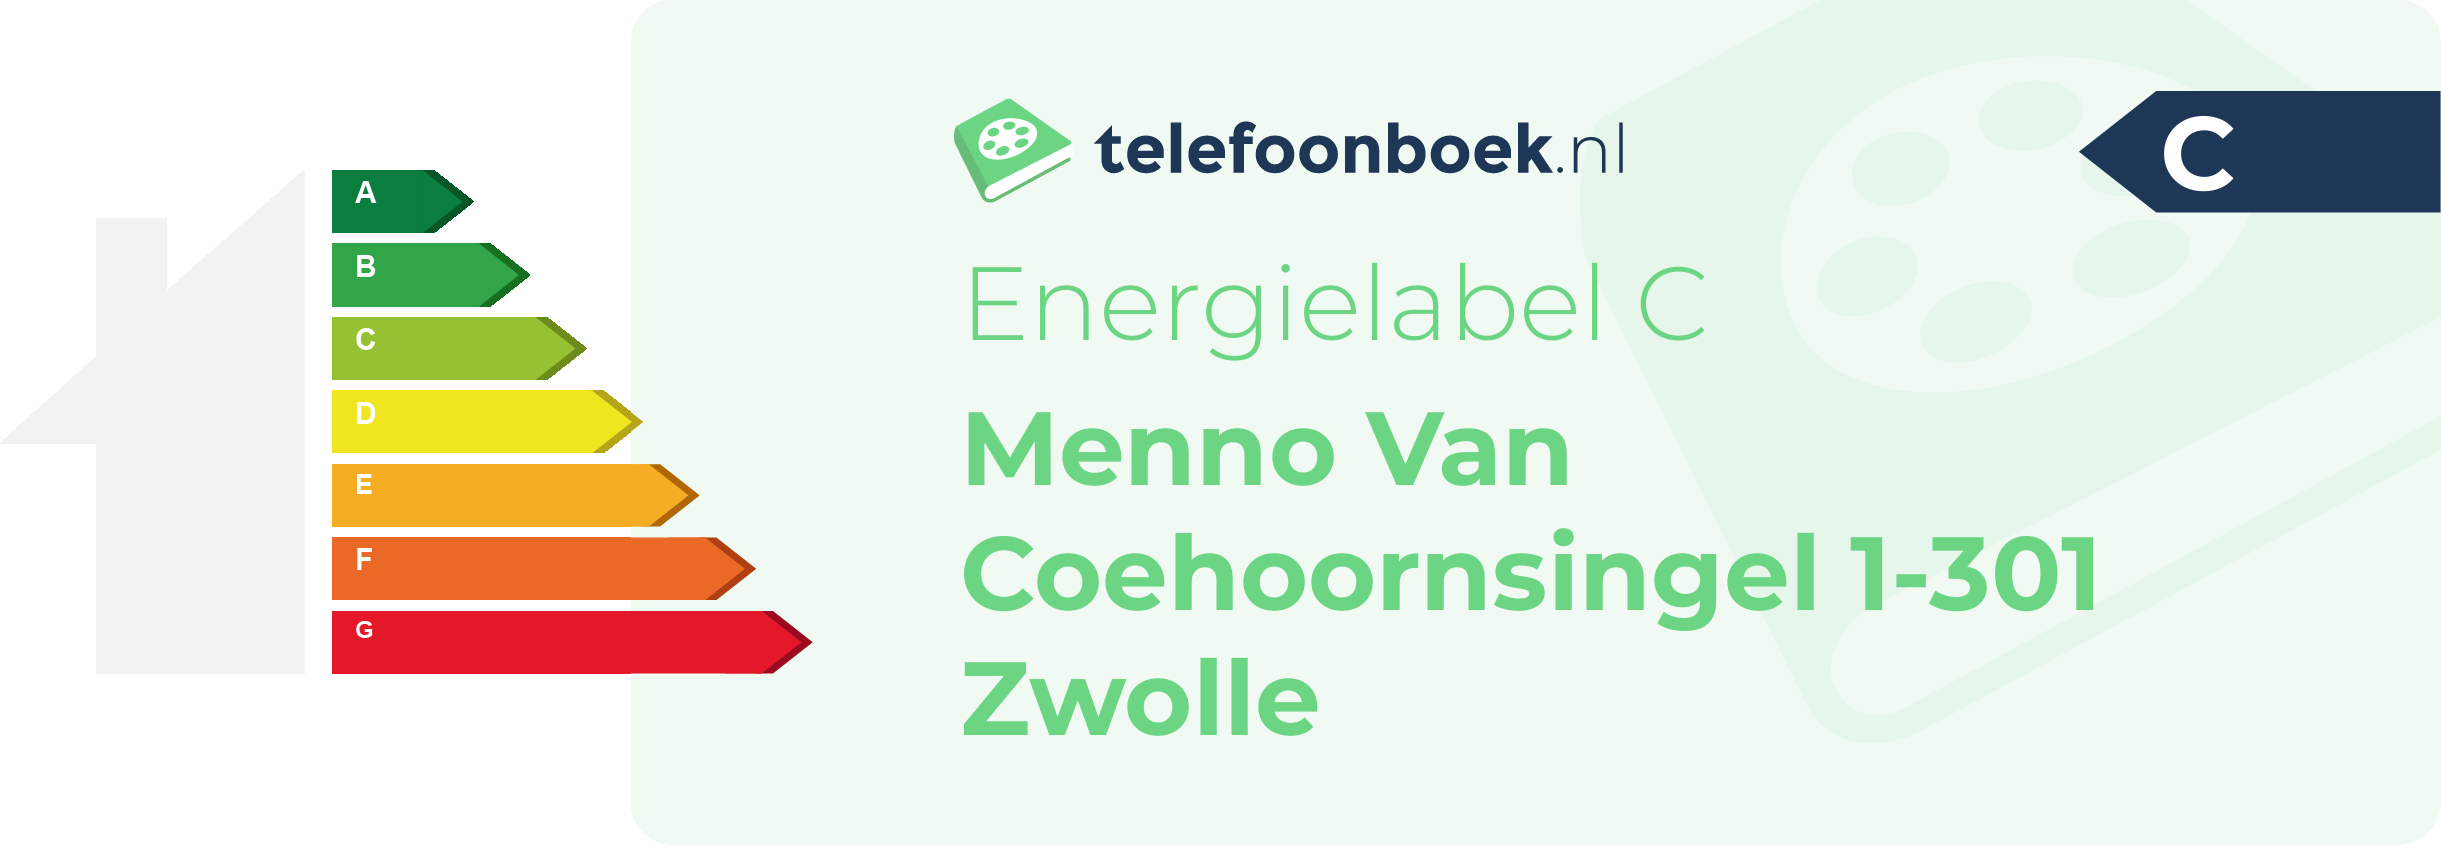 Energielabel Menno Van Coehoornsingel 1-301 Zwolle